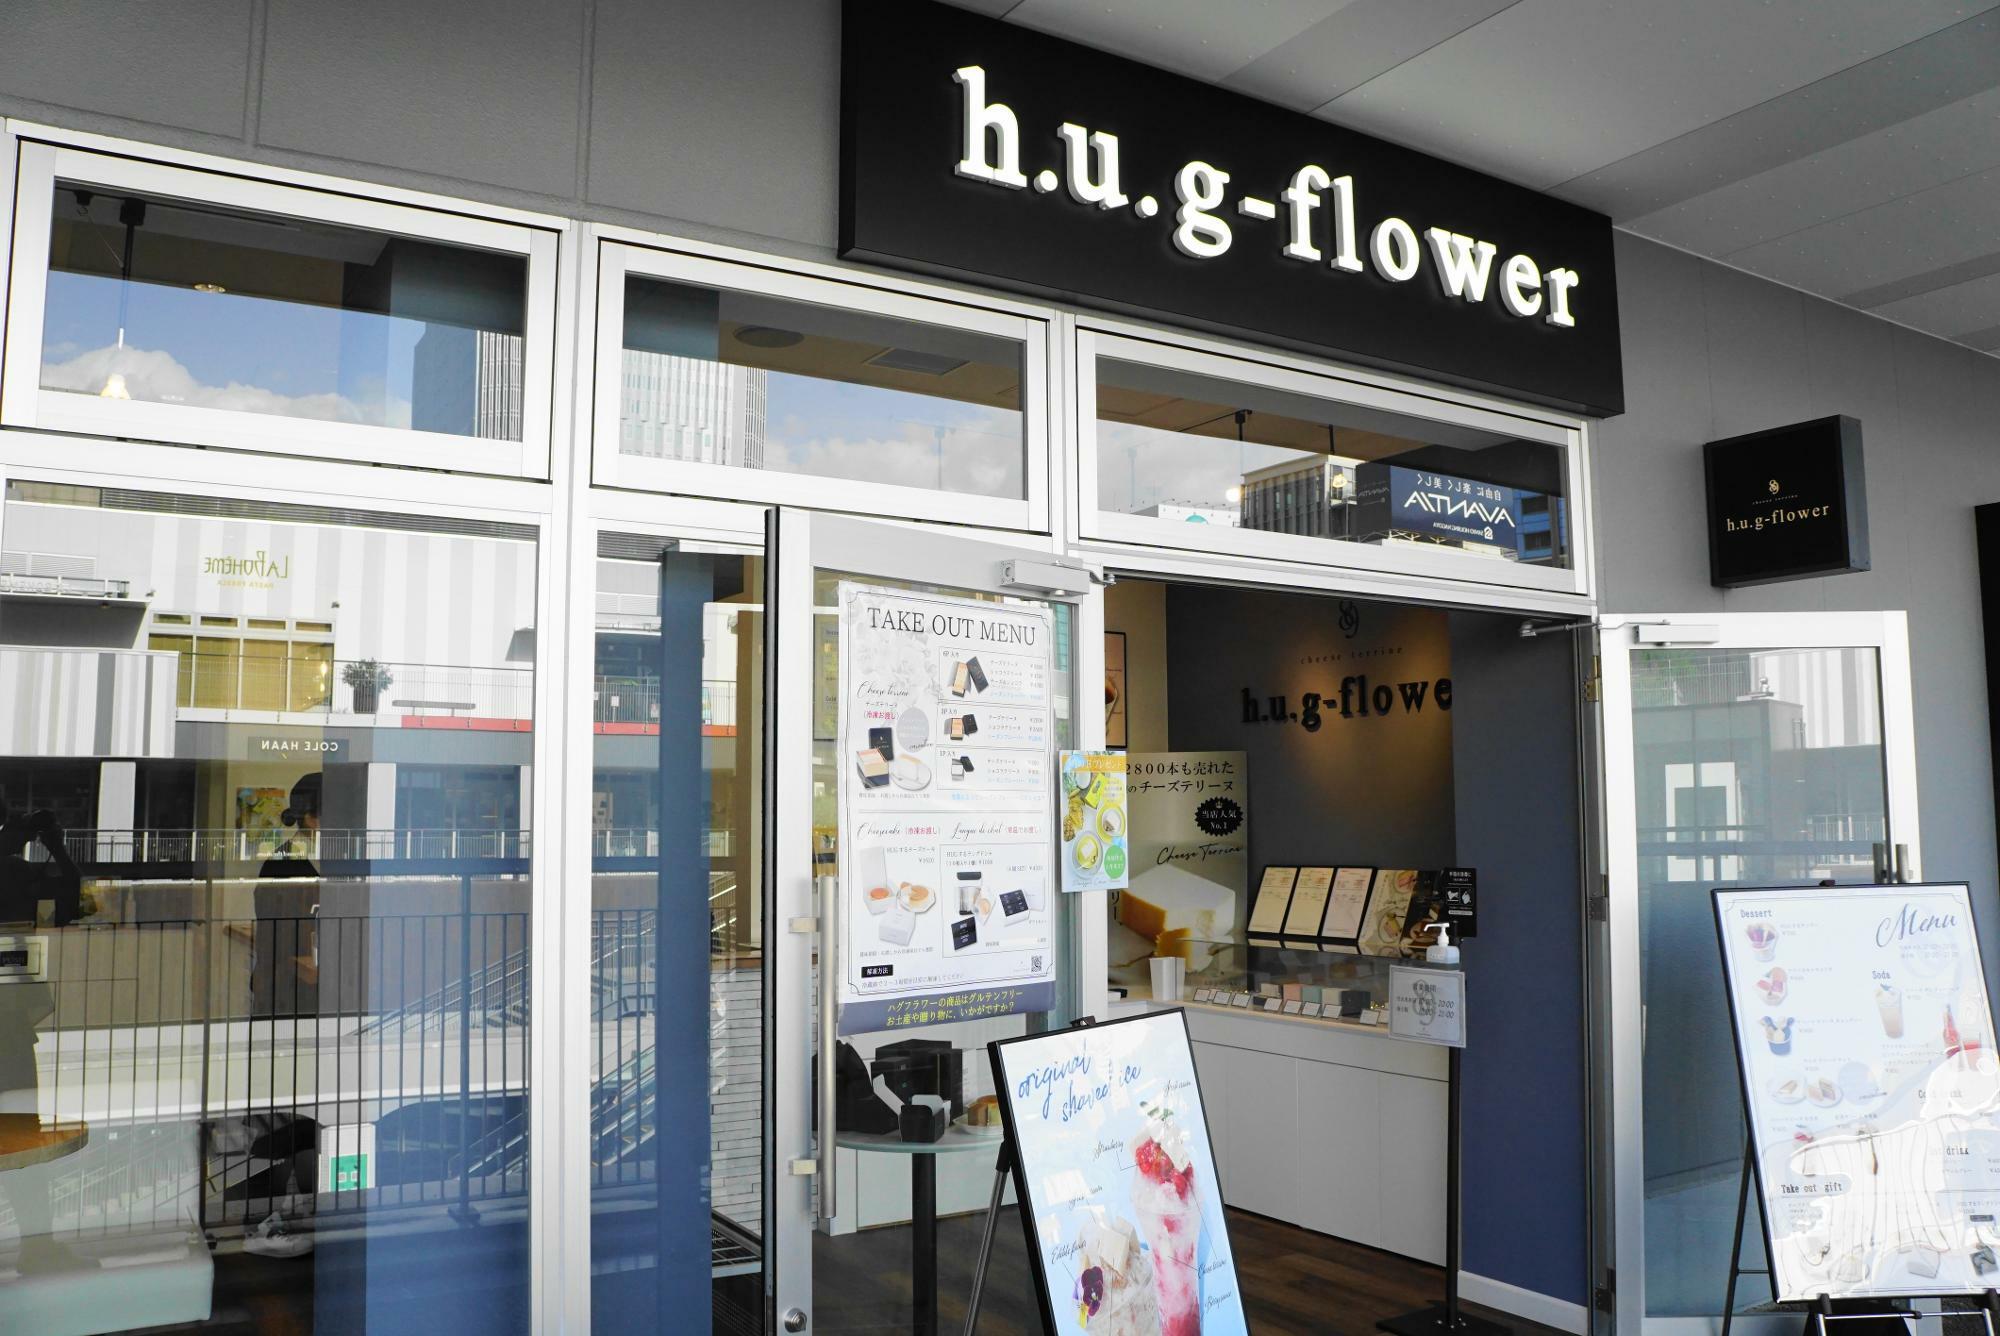 h.u.g-flower久屋大通店